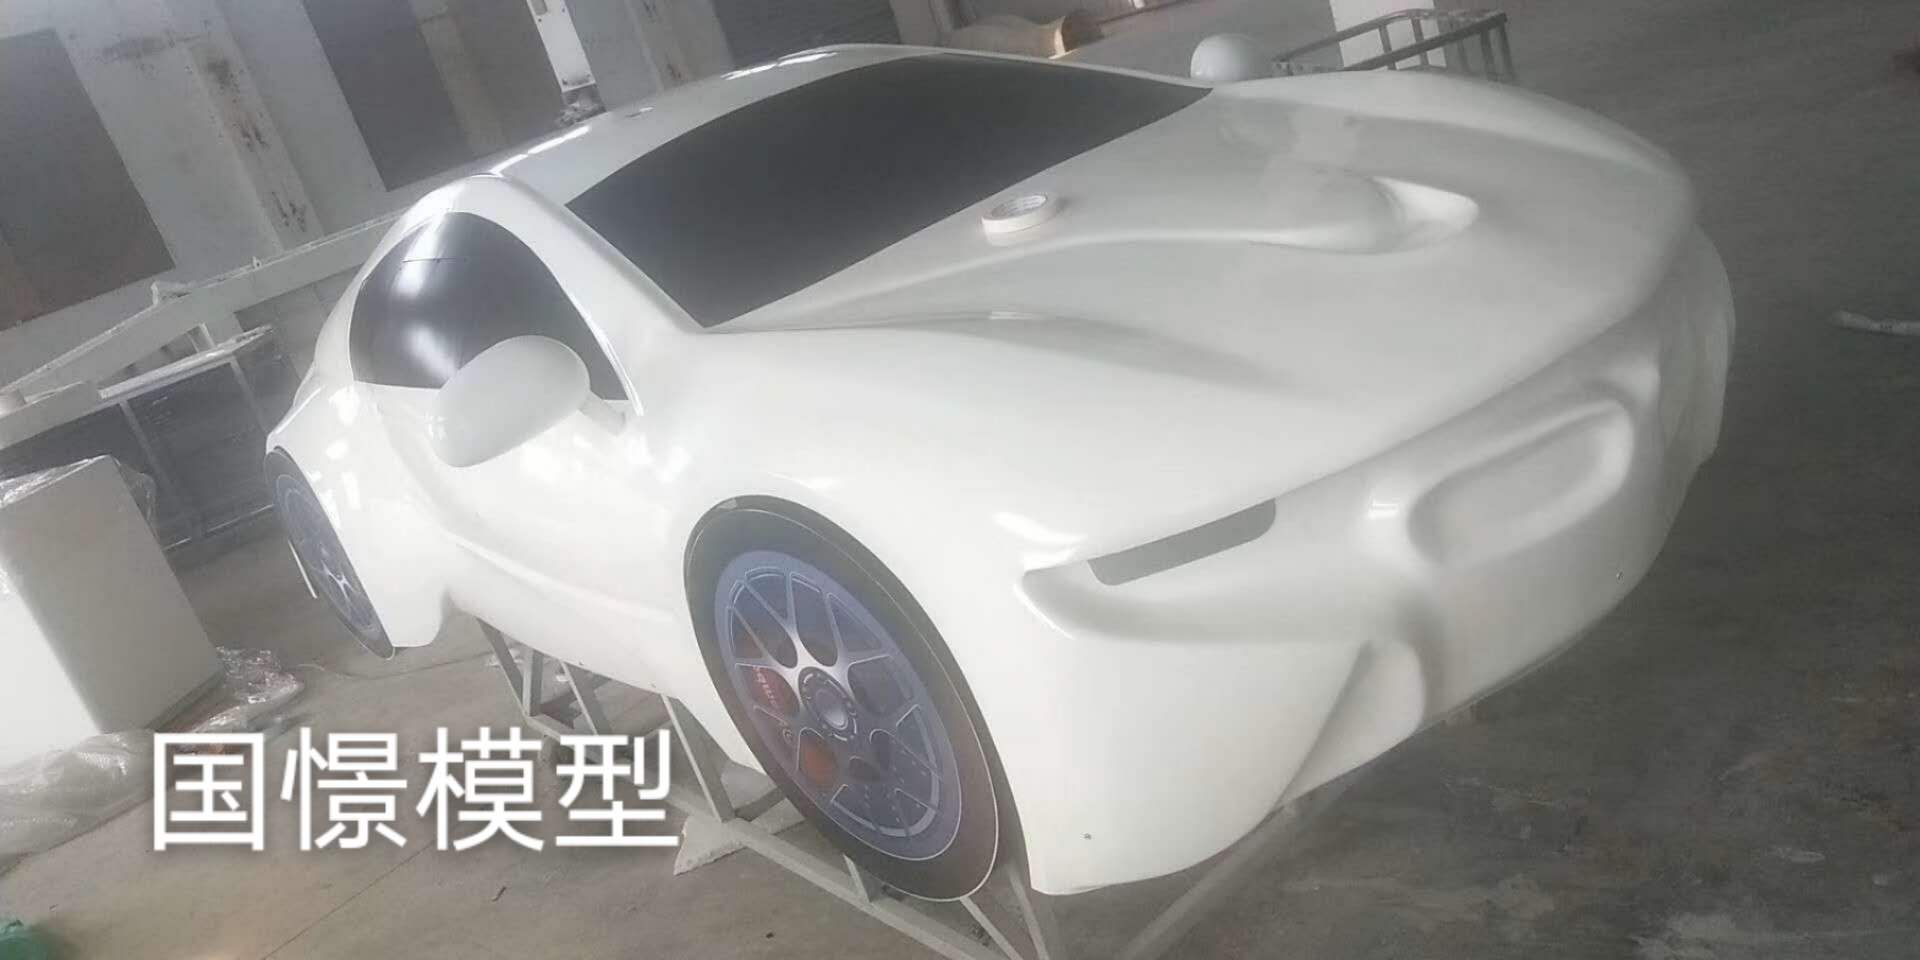 赵县车辆模型